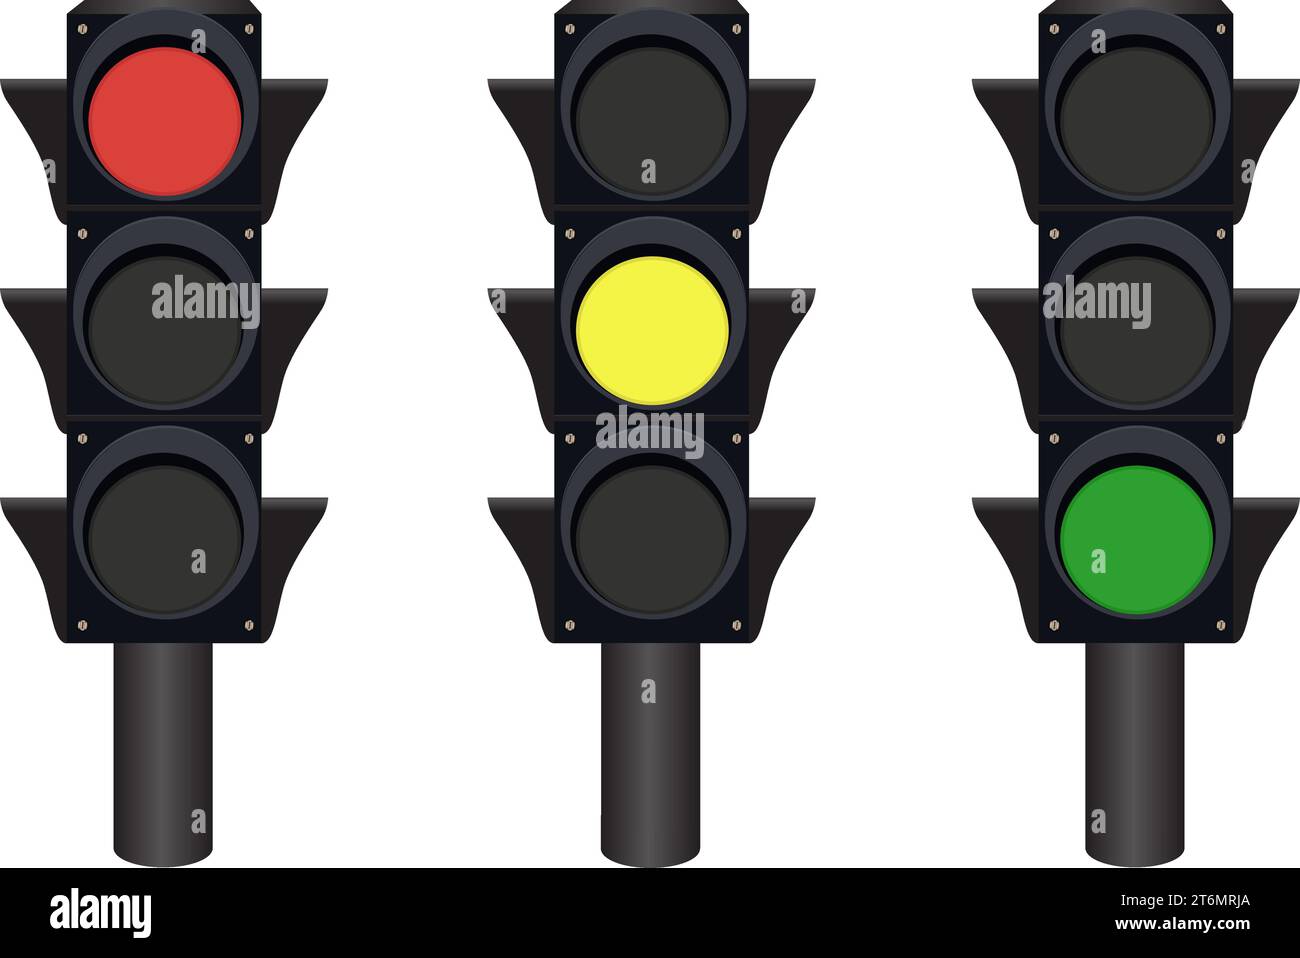 Ilustración vectorial de señal de tráfico. señale con iconos planos de color rojo, amarillo y verde para aplicaciones y sitios web. sobre un fondo blanco. Ilustración del Vector